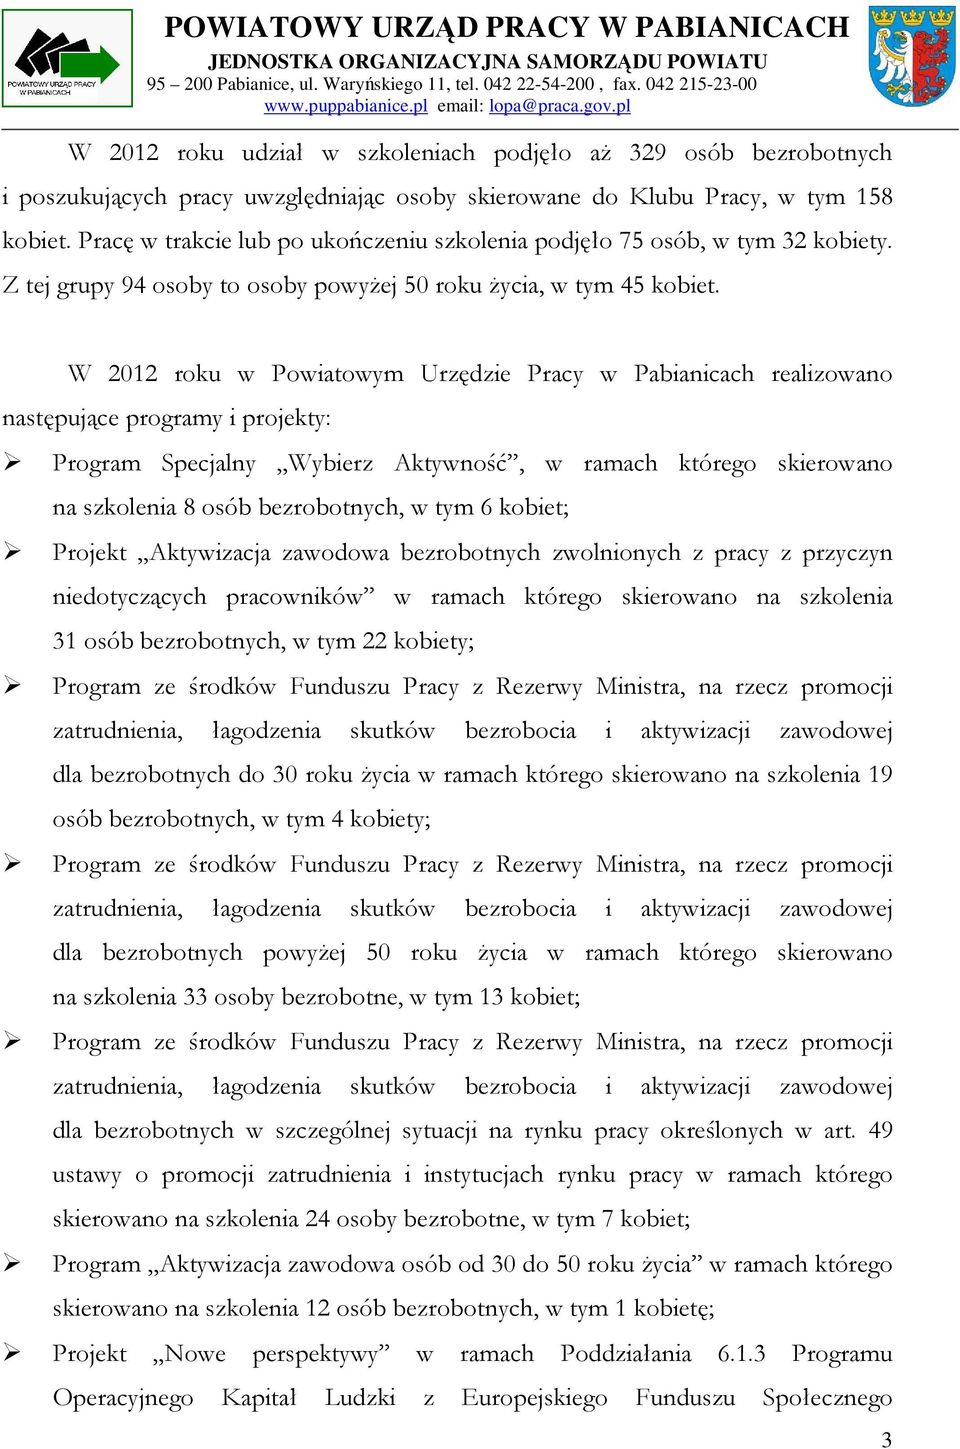 W 2012 roku w Powiatowym Urzędzie Pracy w Pabianicach realizowano następujące programy i projekty: Program Specjalny Wybierz Aktywność, w ramach którego skierowano na szkolenia 8 osób bezrobotnych, w